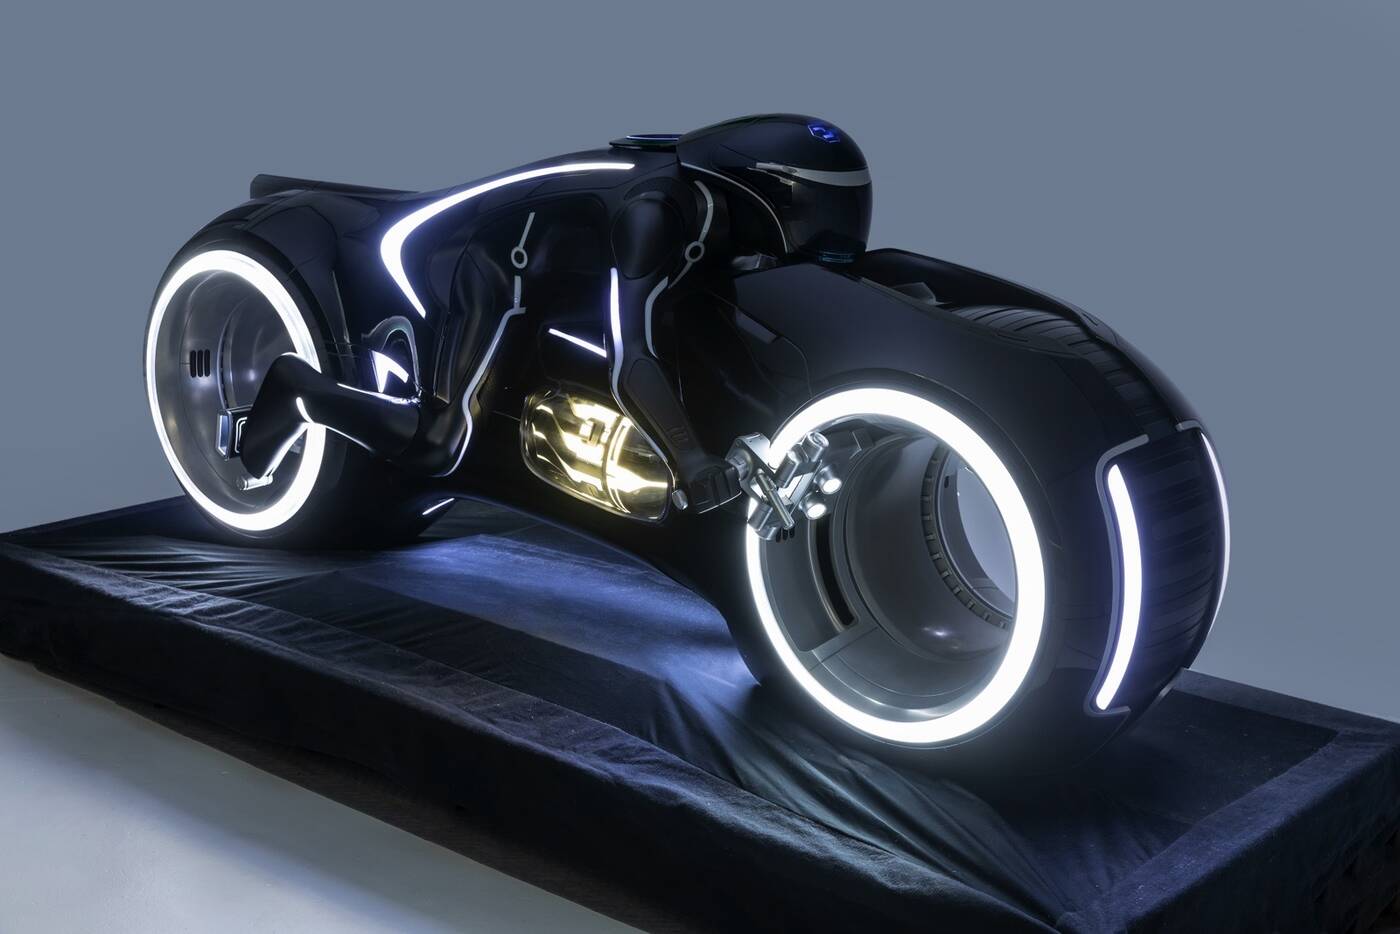 Mieszana rzeczywistość z HoloLens napędzi wystawę futurystycznych pojazdów z filmów i gier